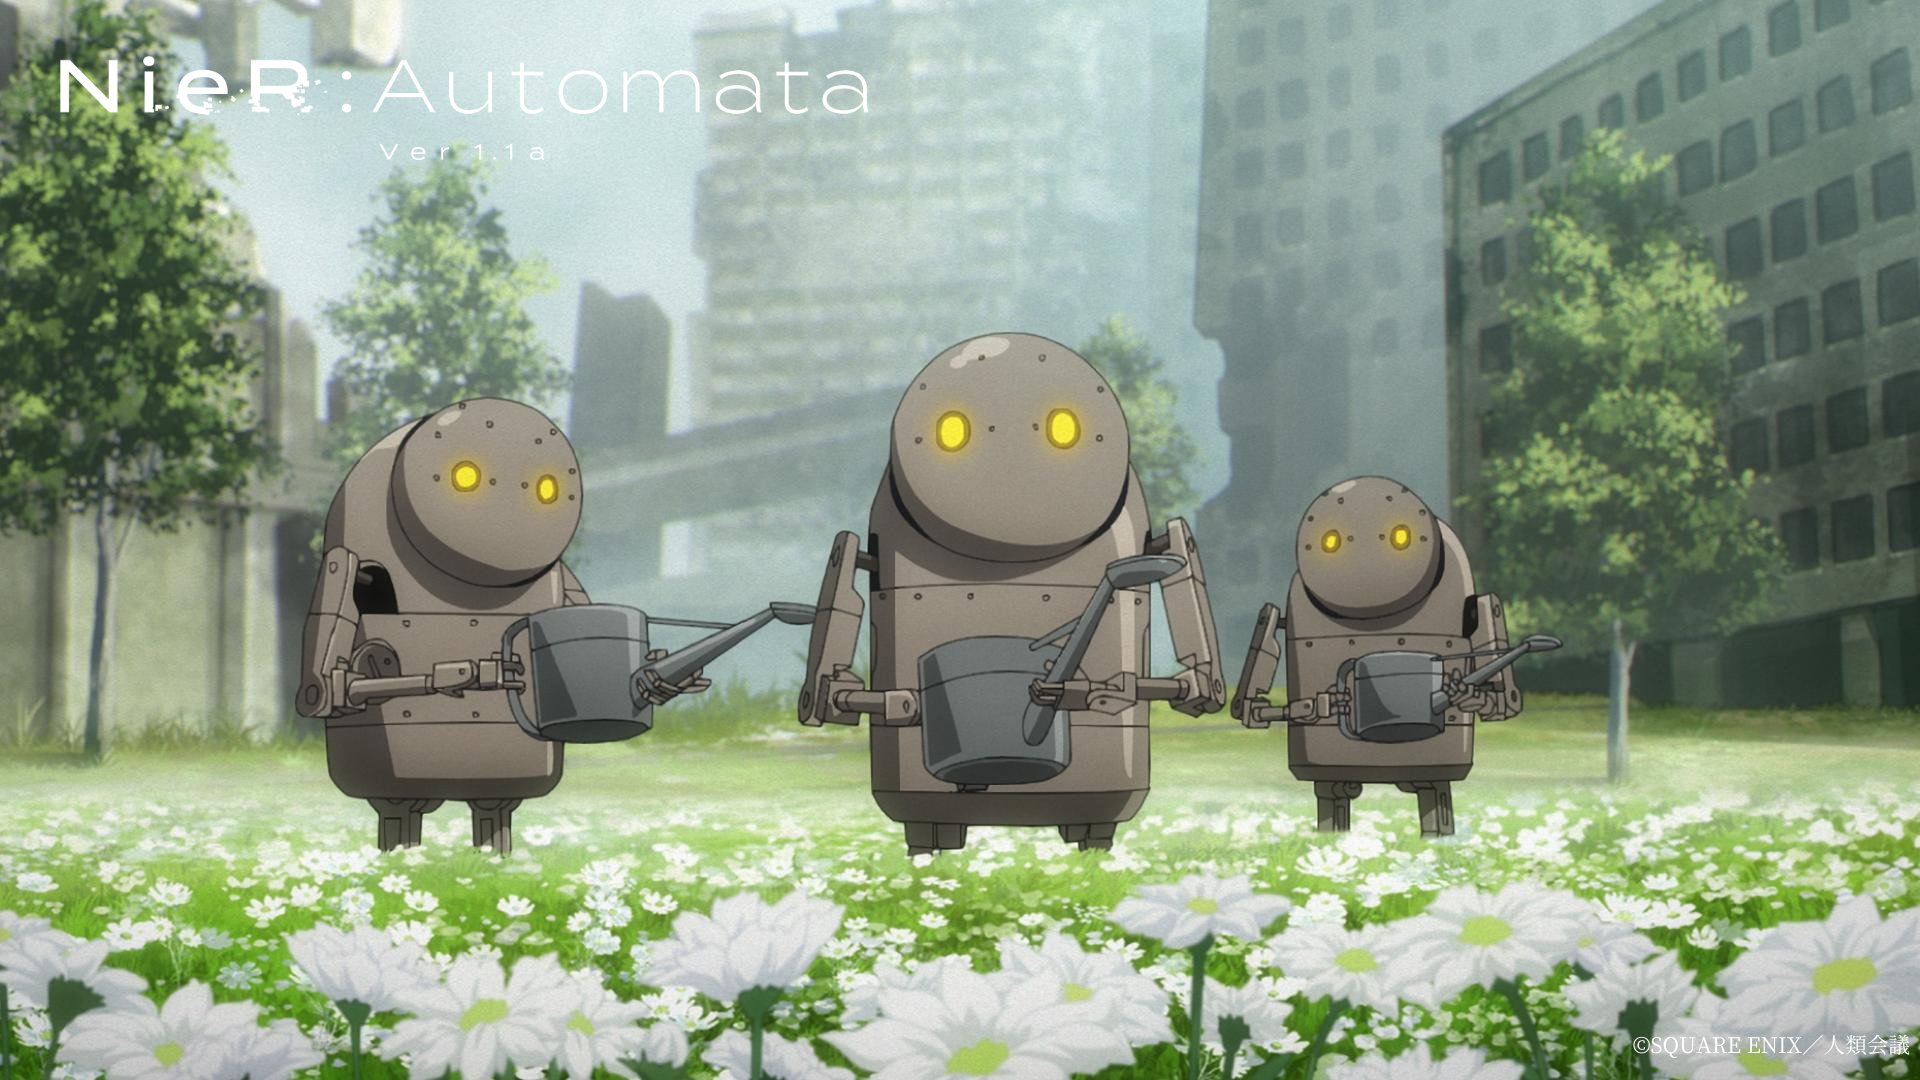 Encabezado de anime NieR: Automata Ver1.1a